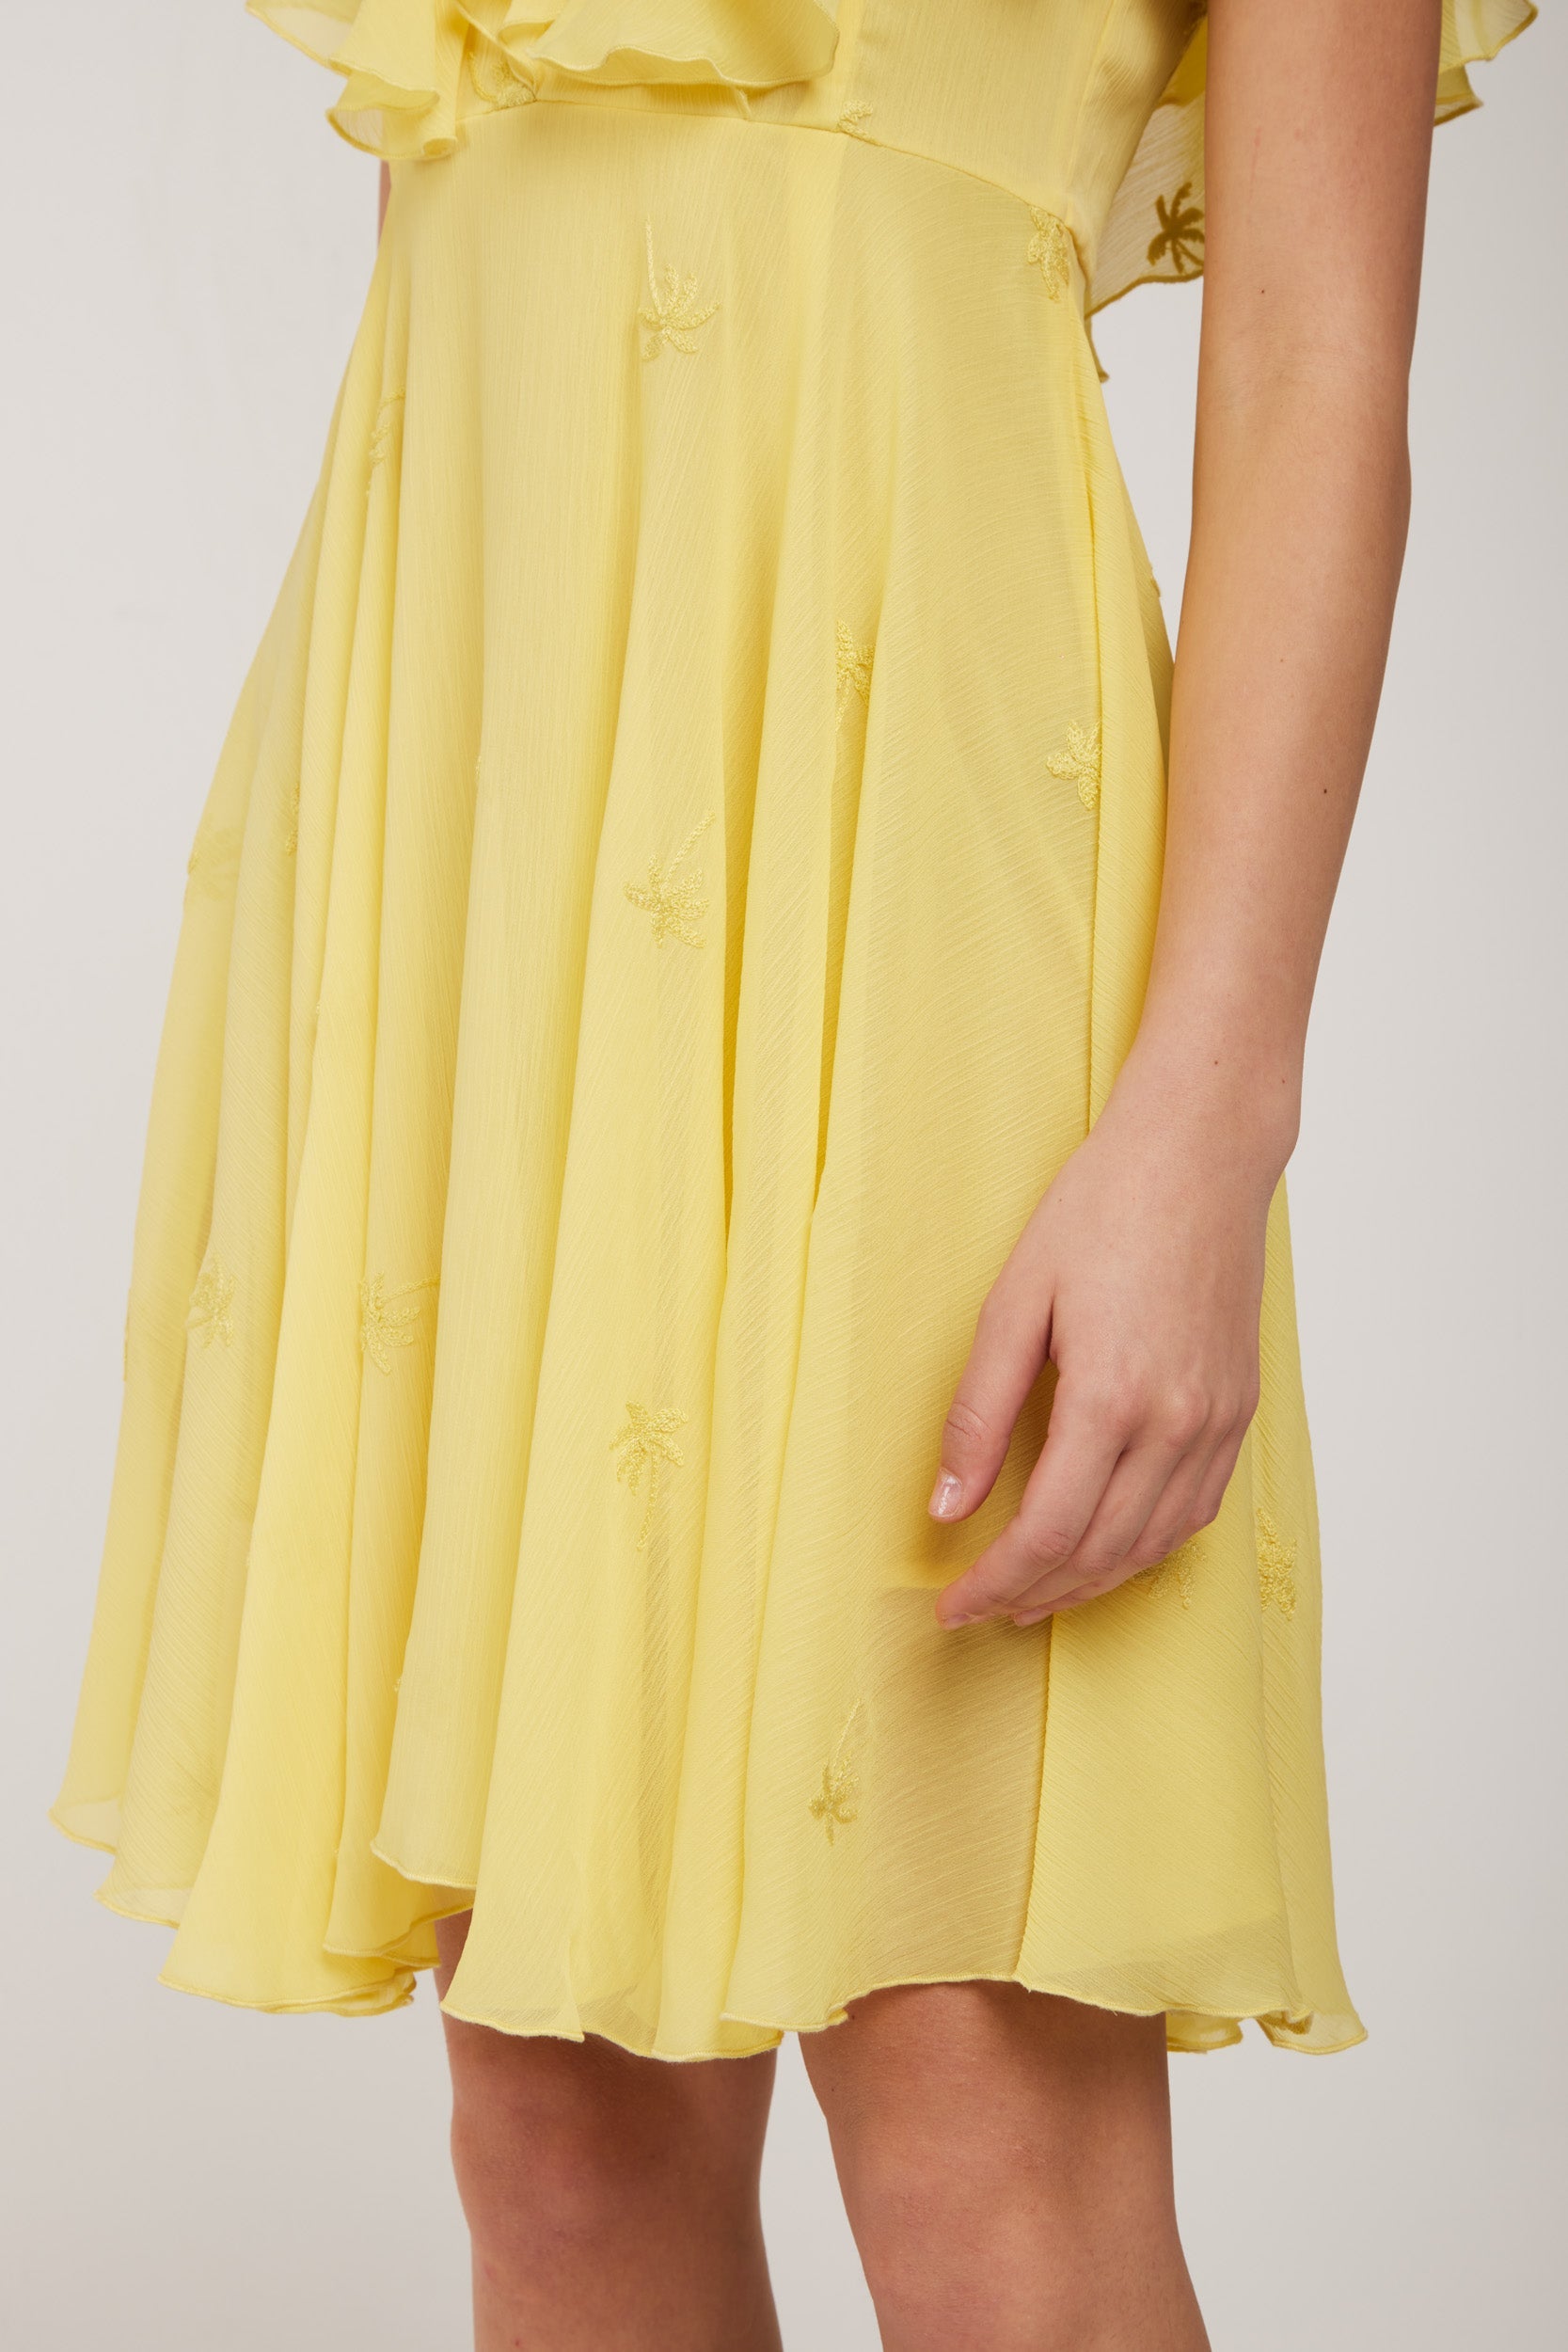 LIU-JO Yellow Chiffon Dress